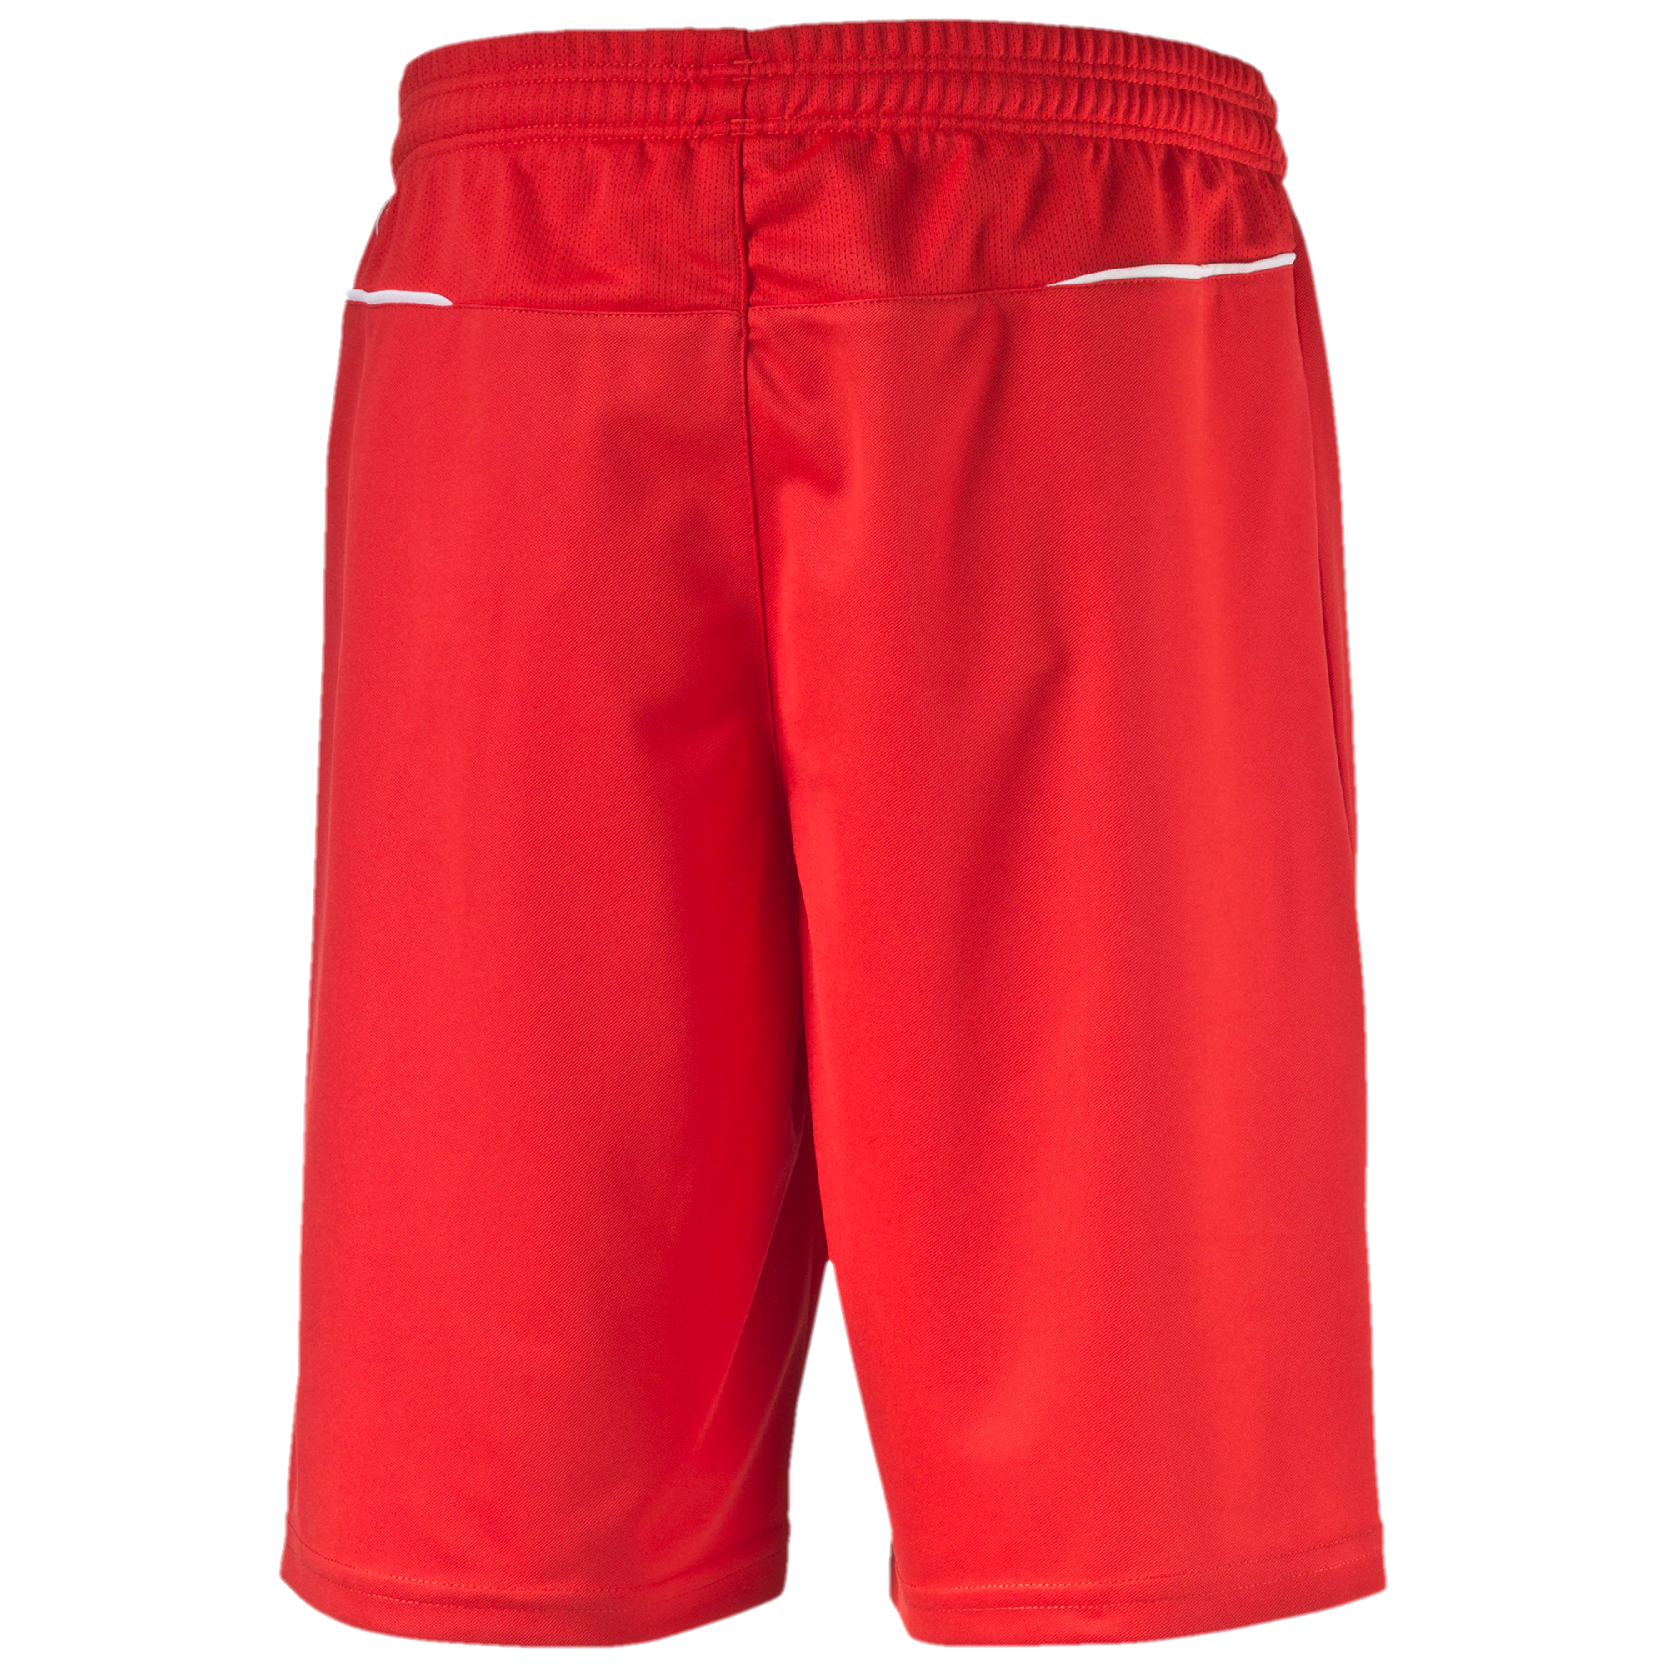 PUMA Kinder BTS Shorts Unisex Trainingshose Sporthose 654416 Rot